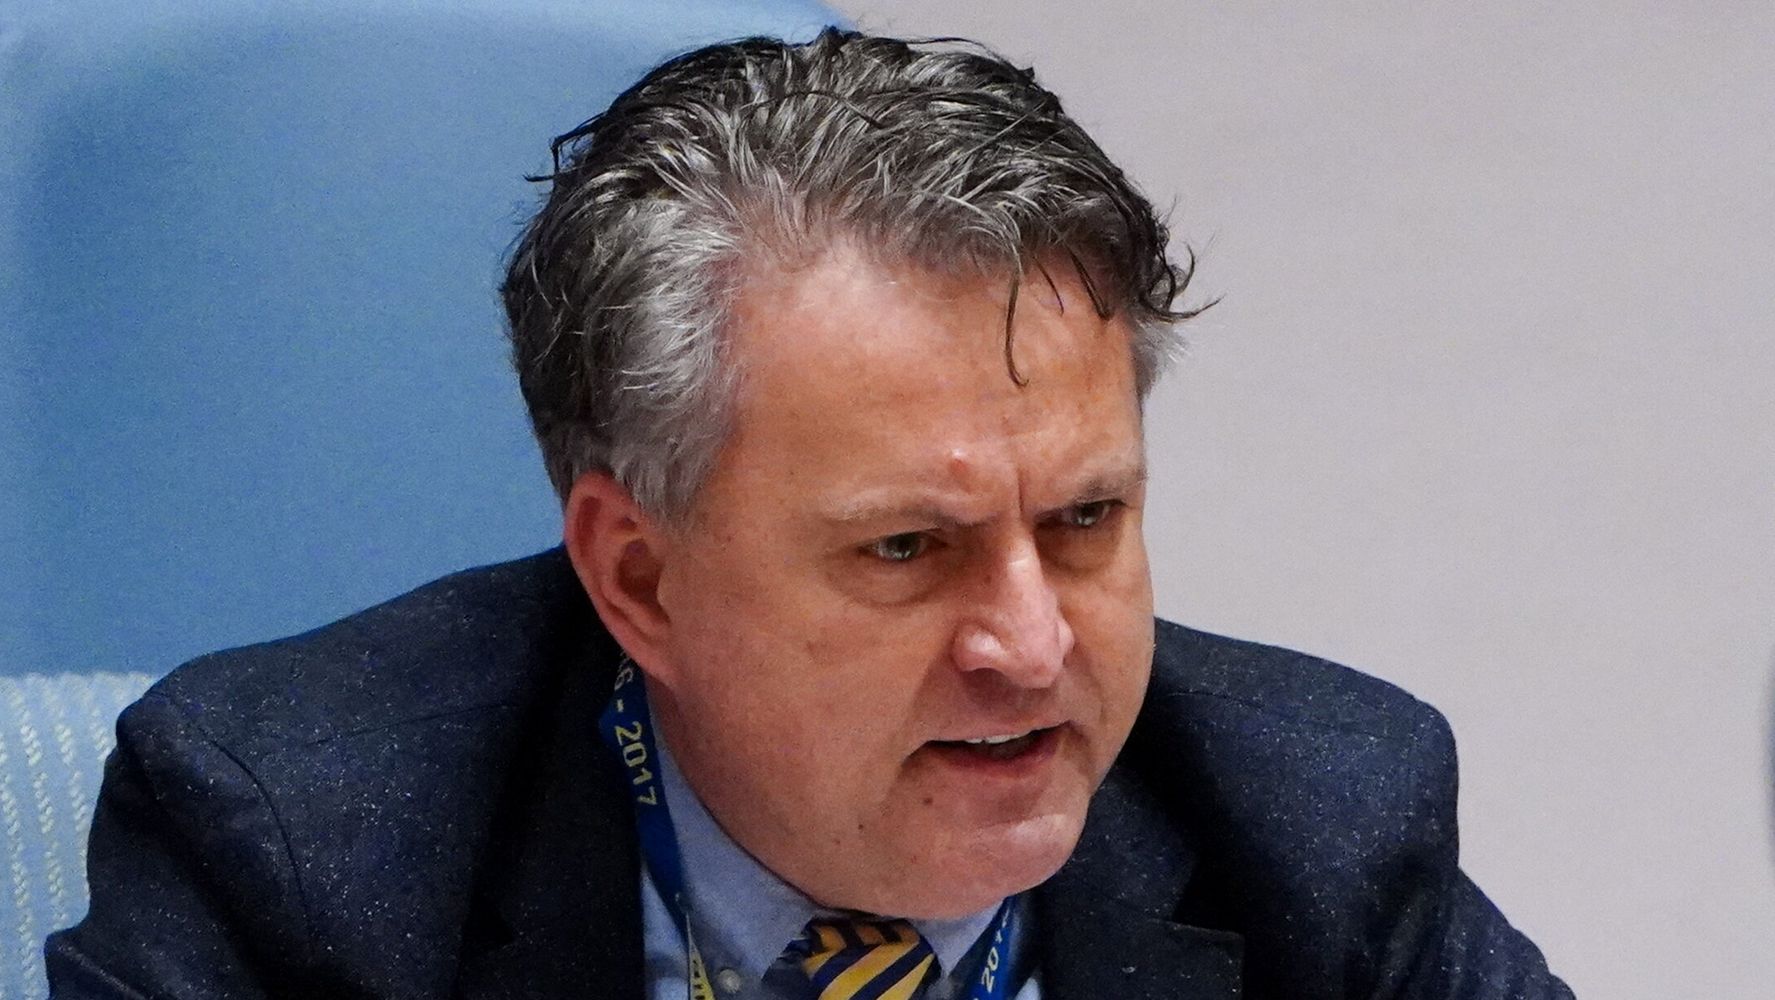 L’ambassadeur d’Ukraine donne aux diplomates russes des conseils cinglants d'”aide mentale”